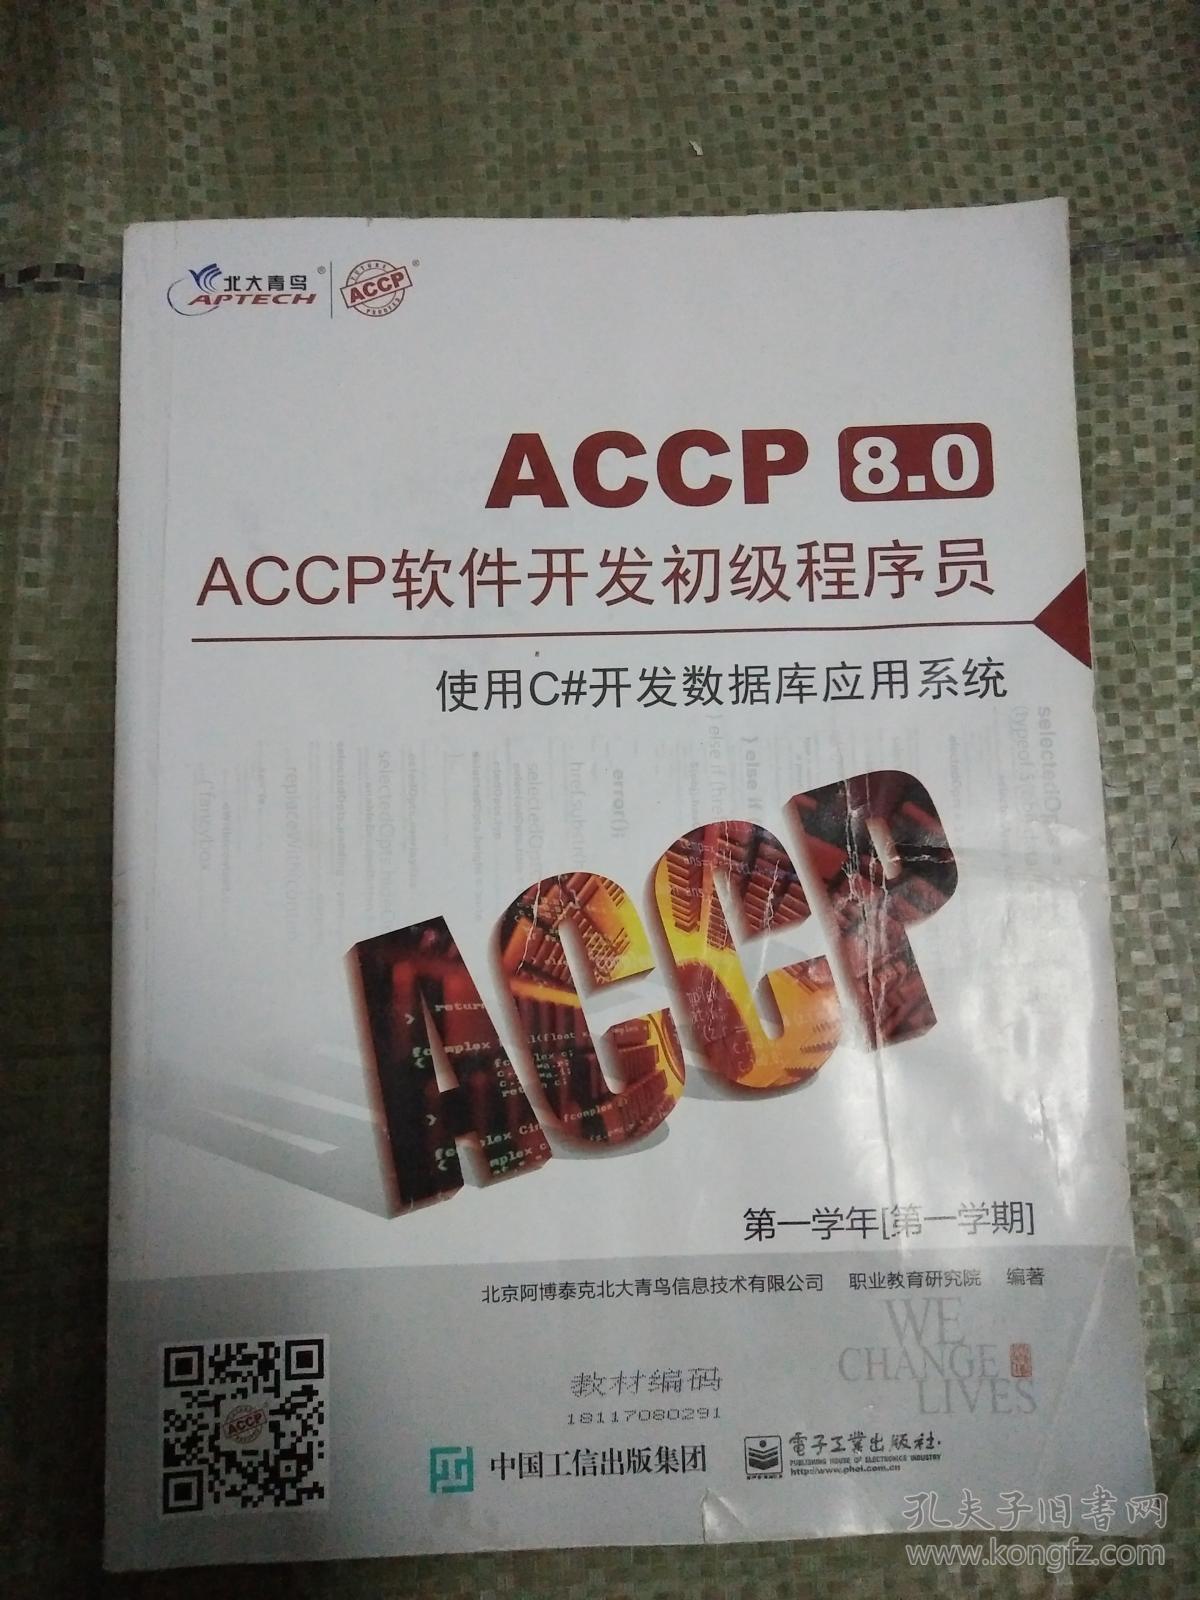 accp8.0软件开发初级程序员 使用c#开发数据库